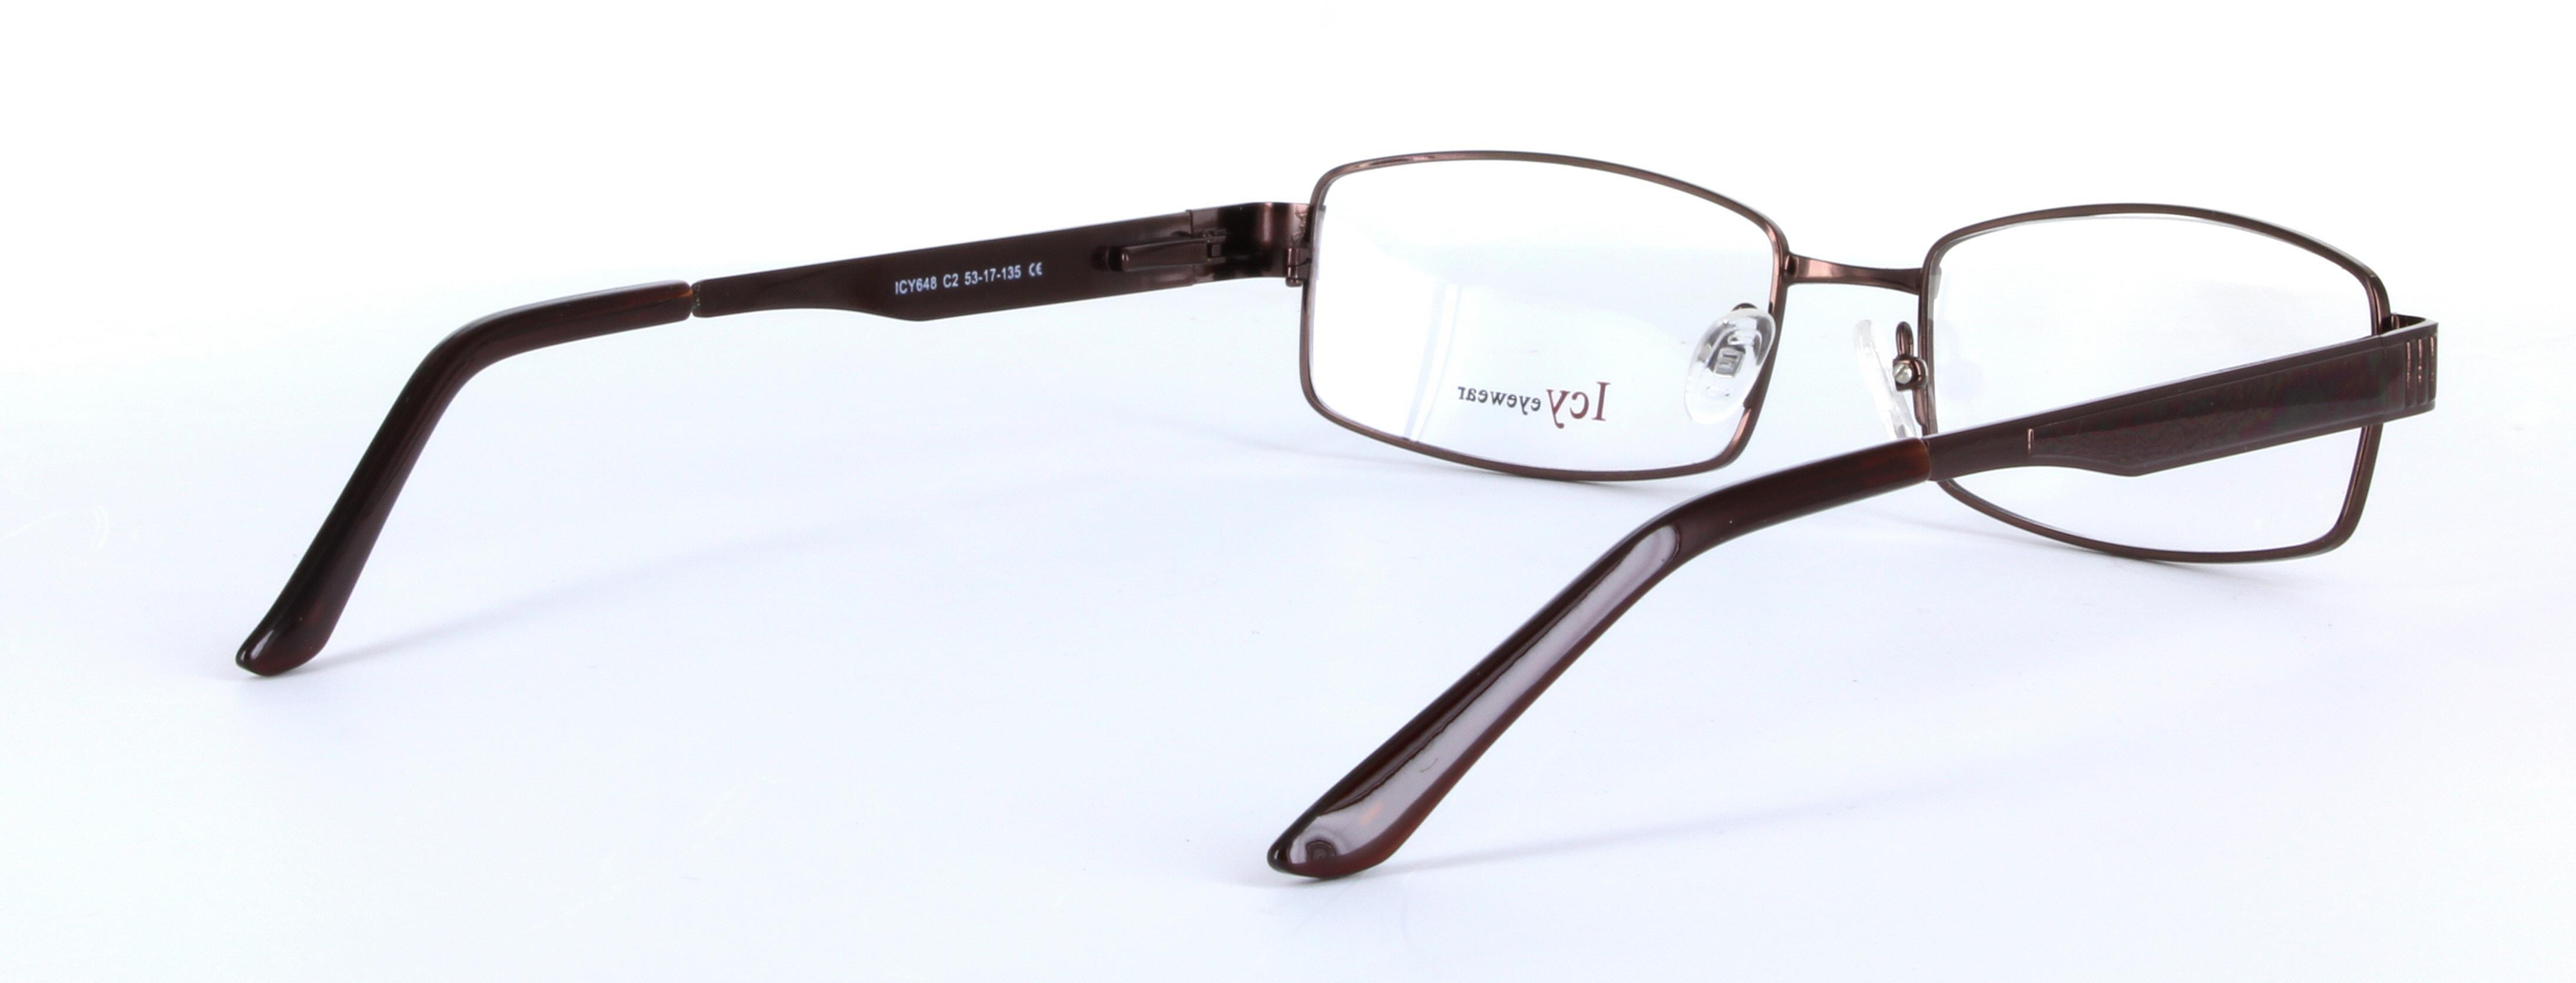 Fusion Brown Full Rim Rectangular Metal Glasses - Image View 4